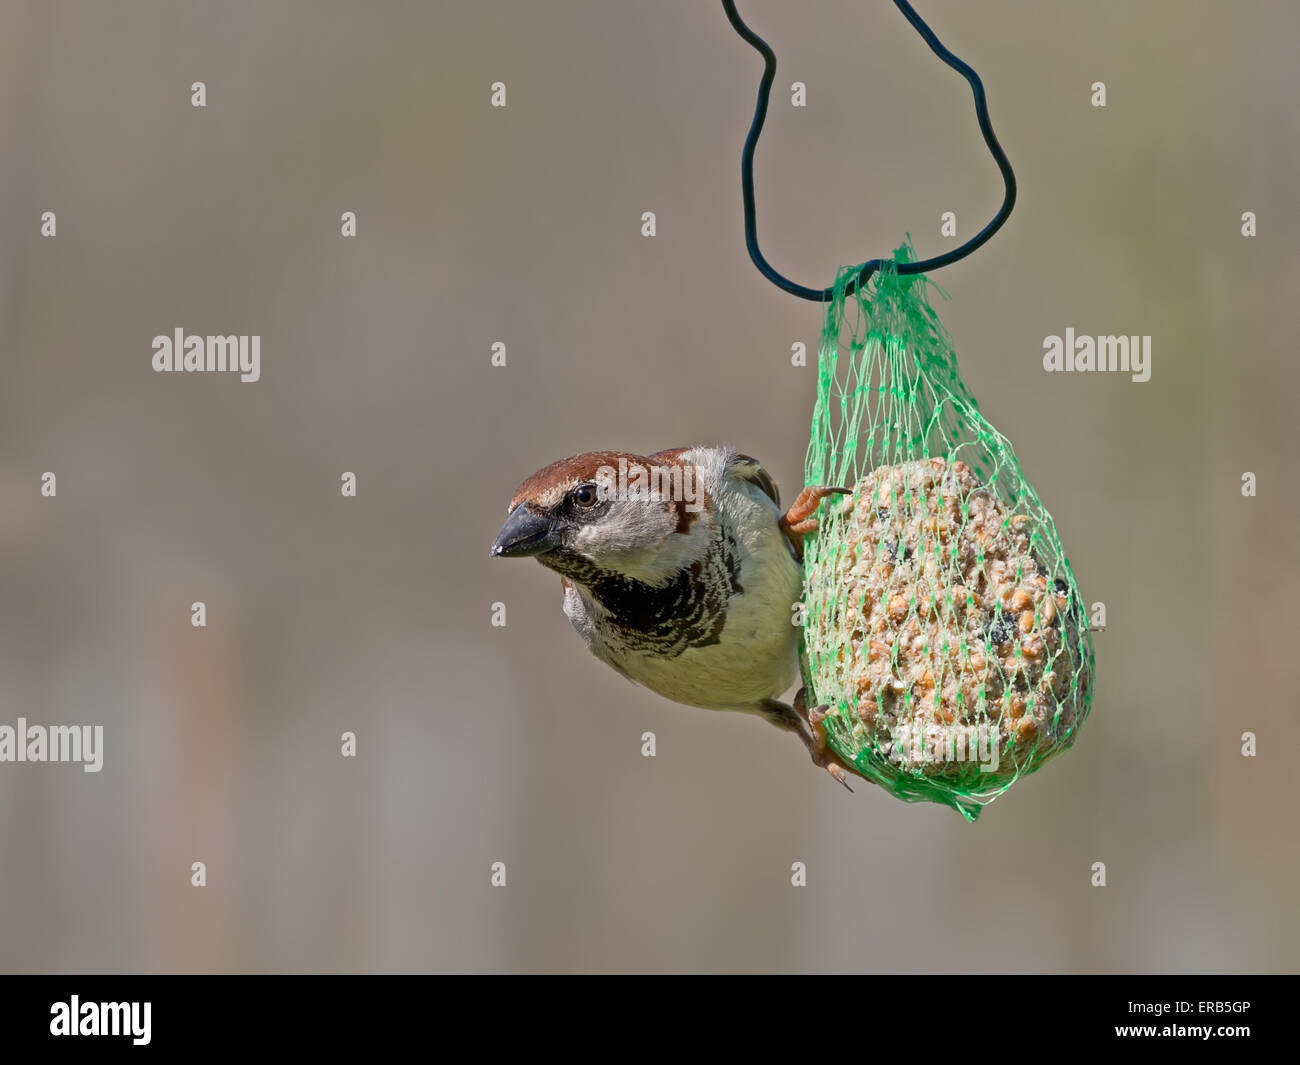 Garden bird. Passer domesticus, house sparrow. Stock Photo